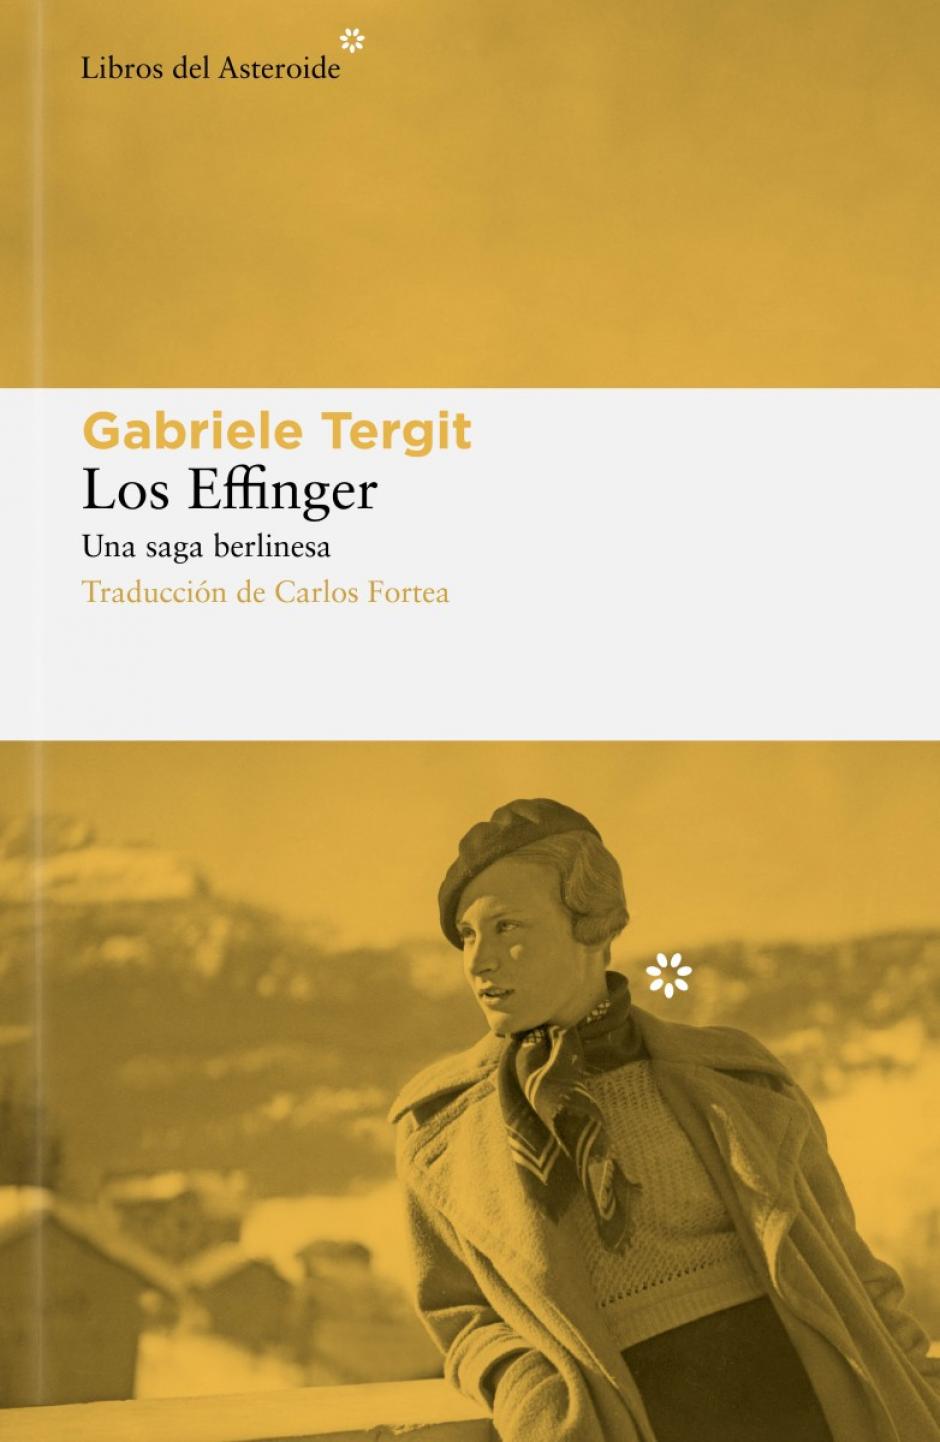 'Los Effinger', e Gabriele Tergit y traducción de Carlos Fortea (Libros del Asteroide), un libro que aborda la saga de dos familias judeo-alemanas de clase alta a lo largo de cuatro generaciones. Un "novelón" que ha "conquistado" a los libreros por la "pr